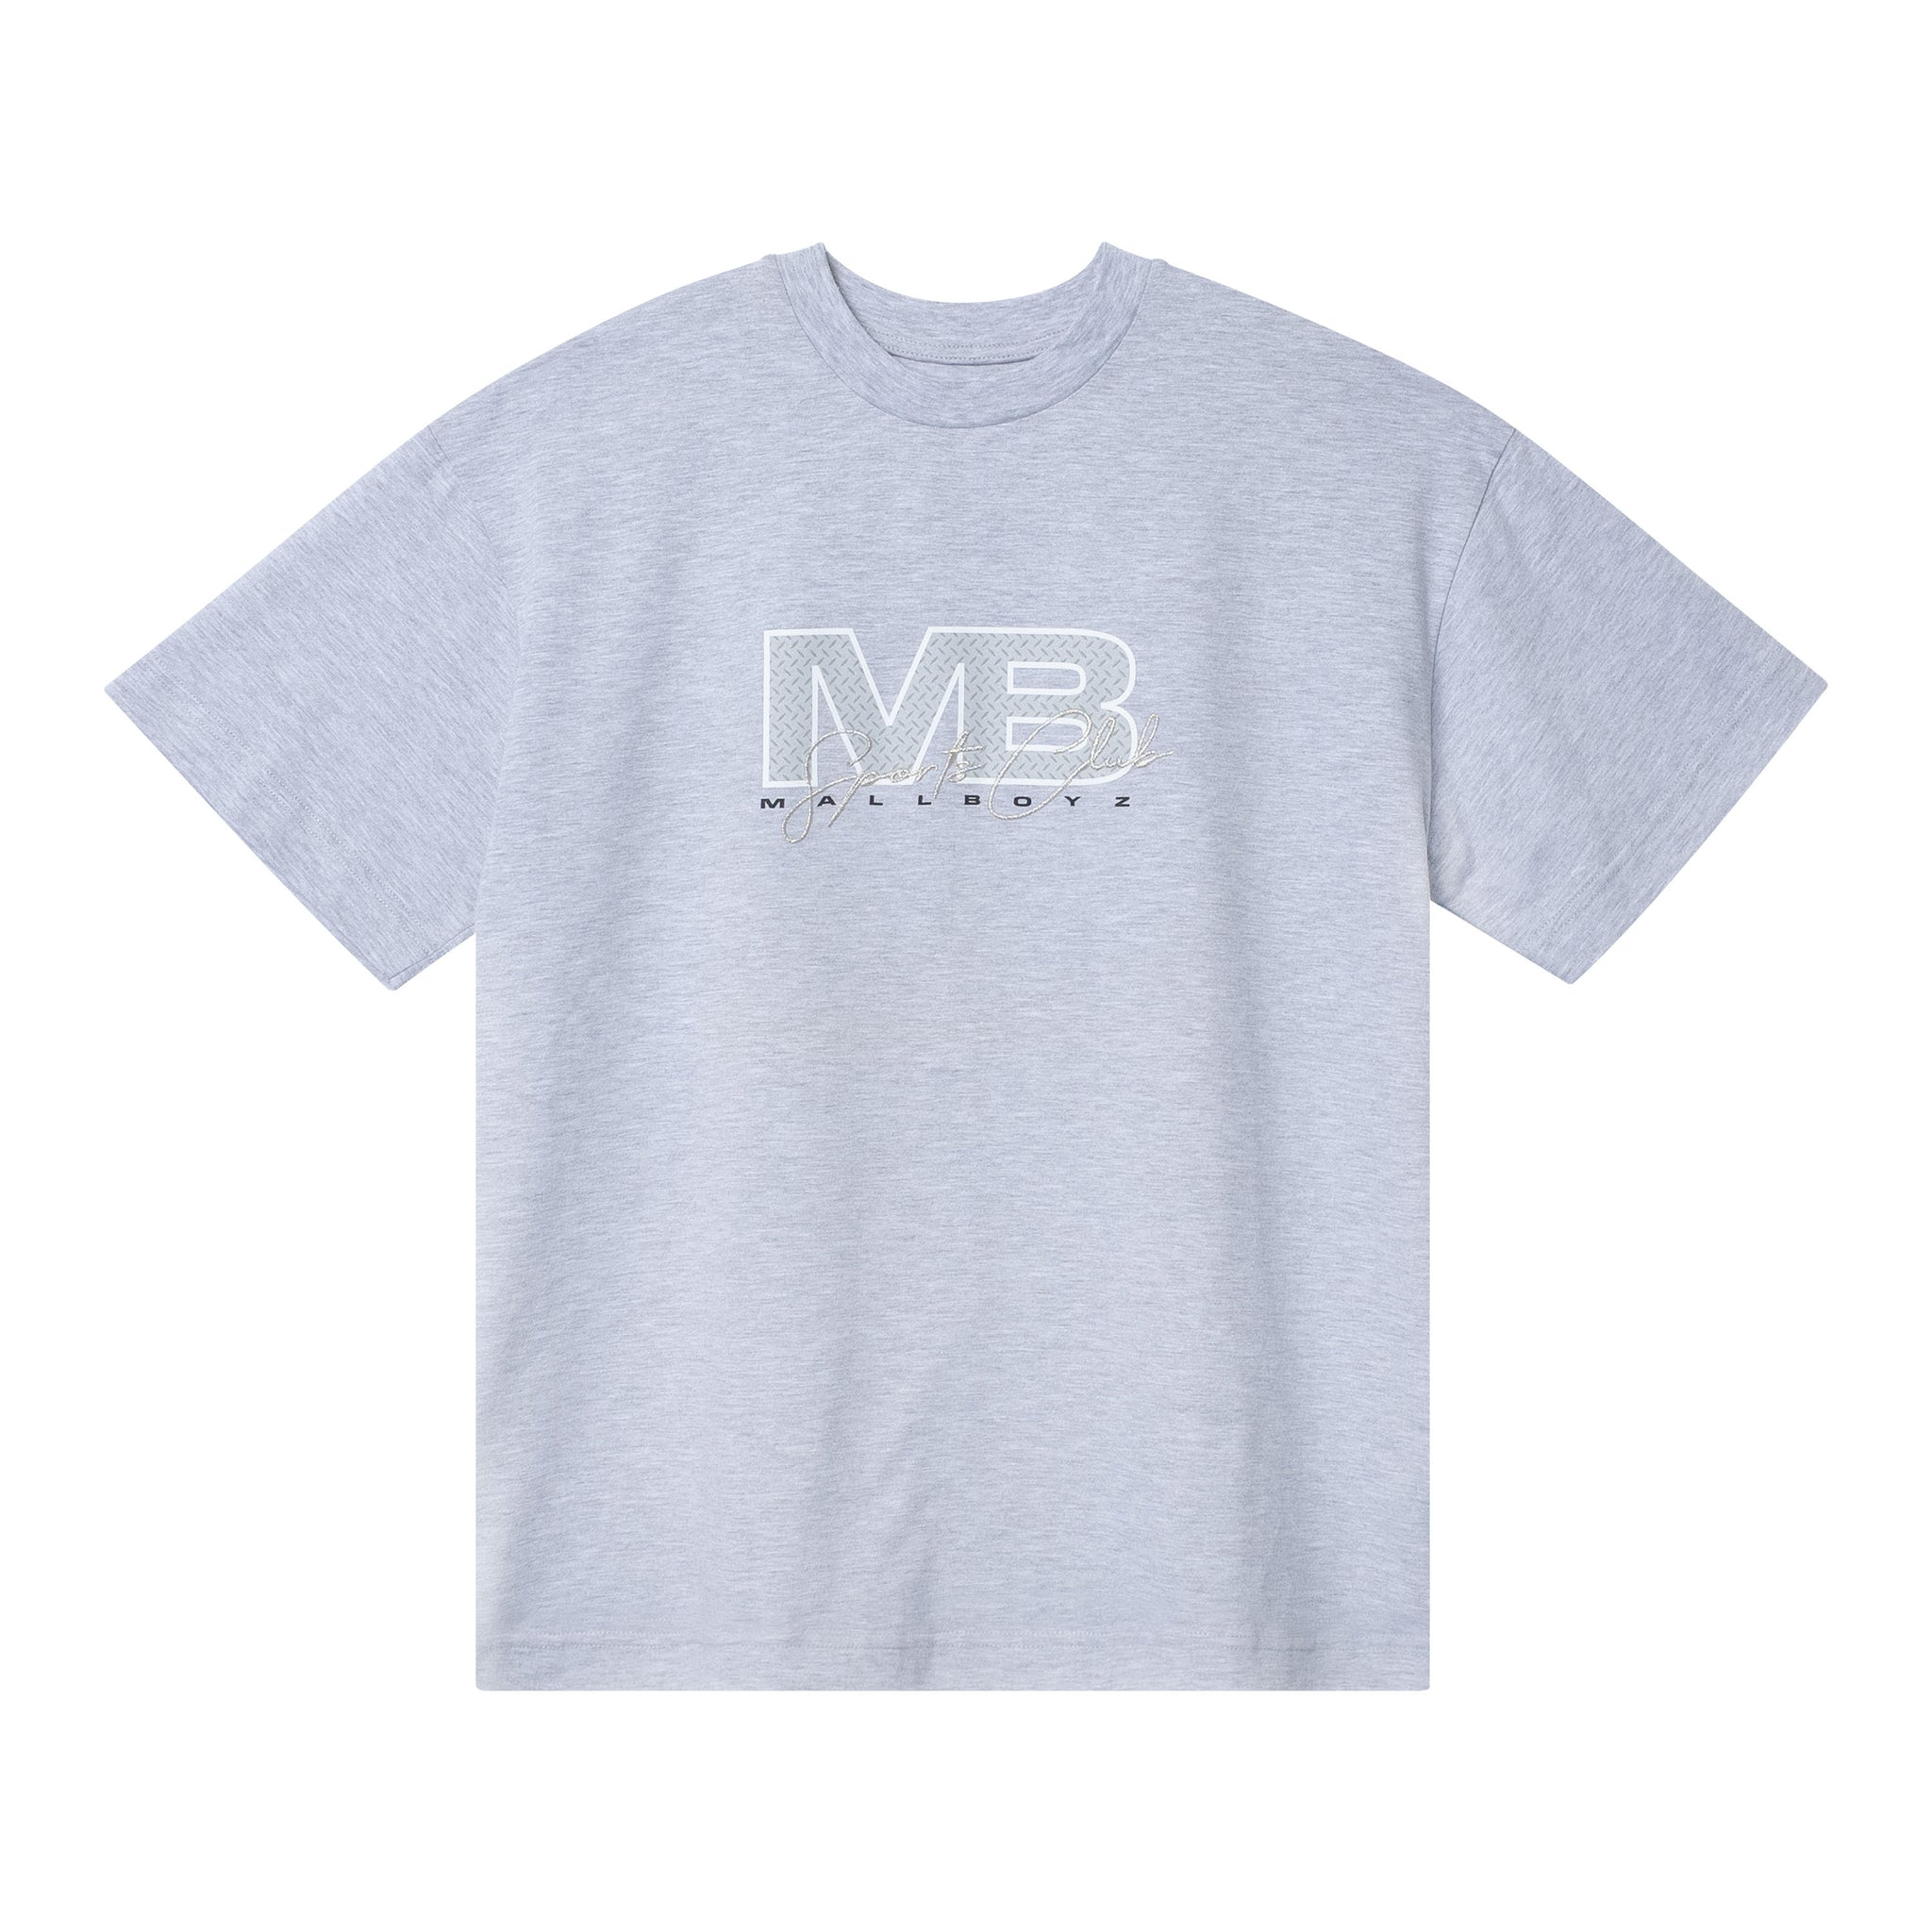 Mallboyz Grey T-Shirt